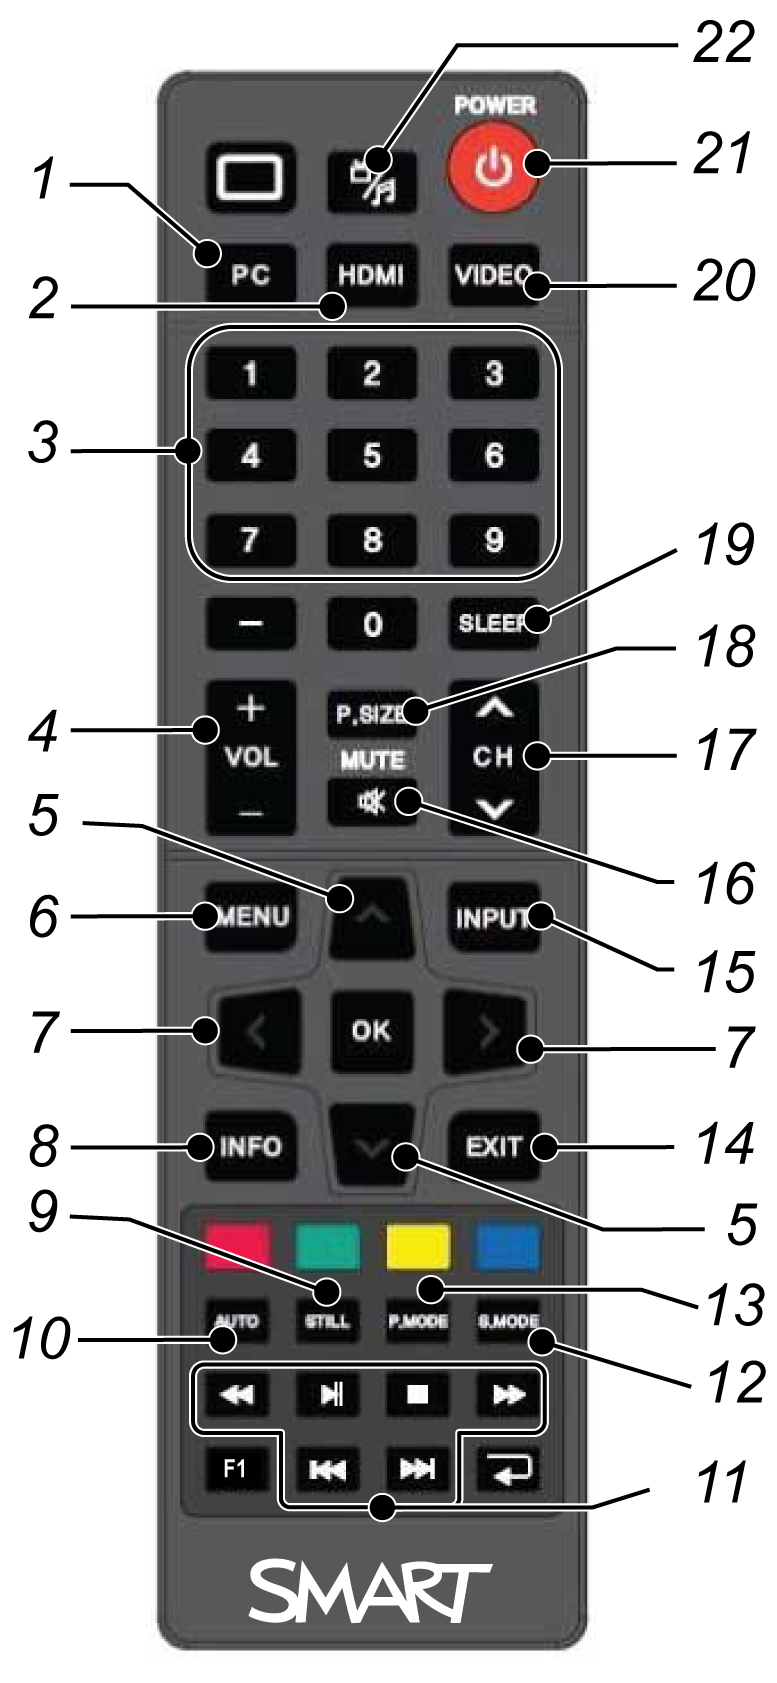 C H A P I T R E 3 Utiliser votre écran plat interactif N Bouton Détails 1 PC Sélectionne l'entrée VGA 2 HDMI Sélectionner l'entrée HDMI 3 [Boutons numérotés] Appuyez sur les boutons du pavé numérique